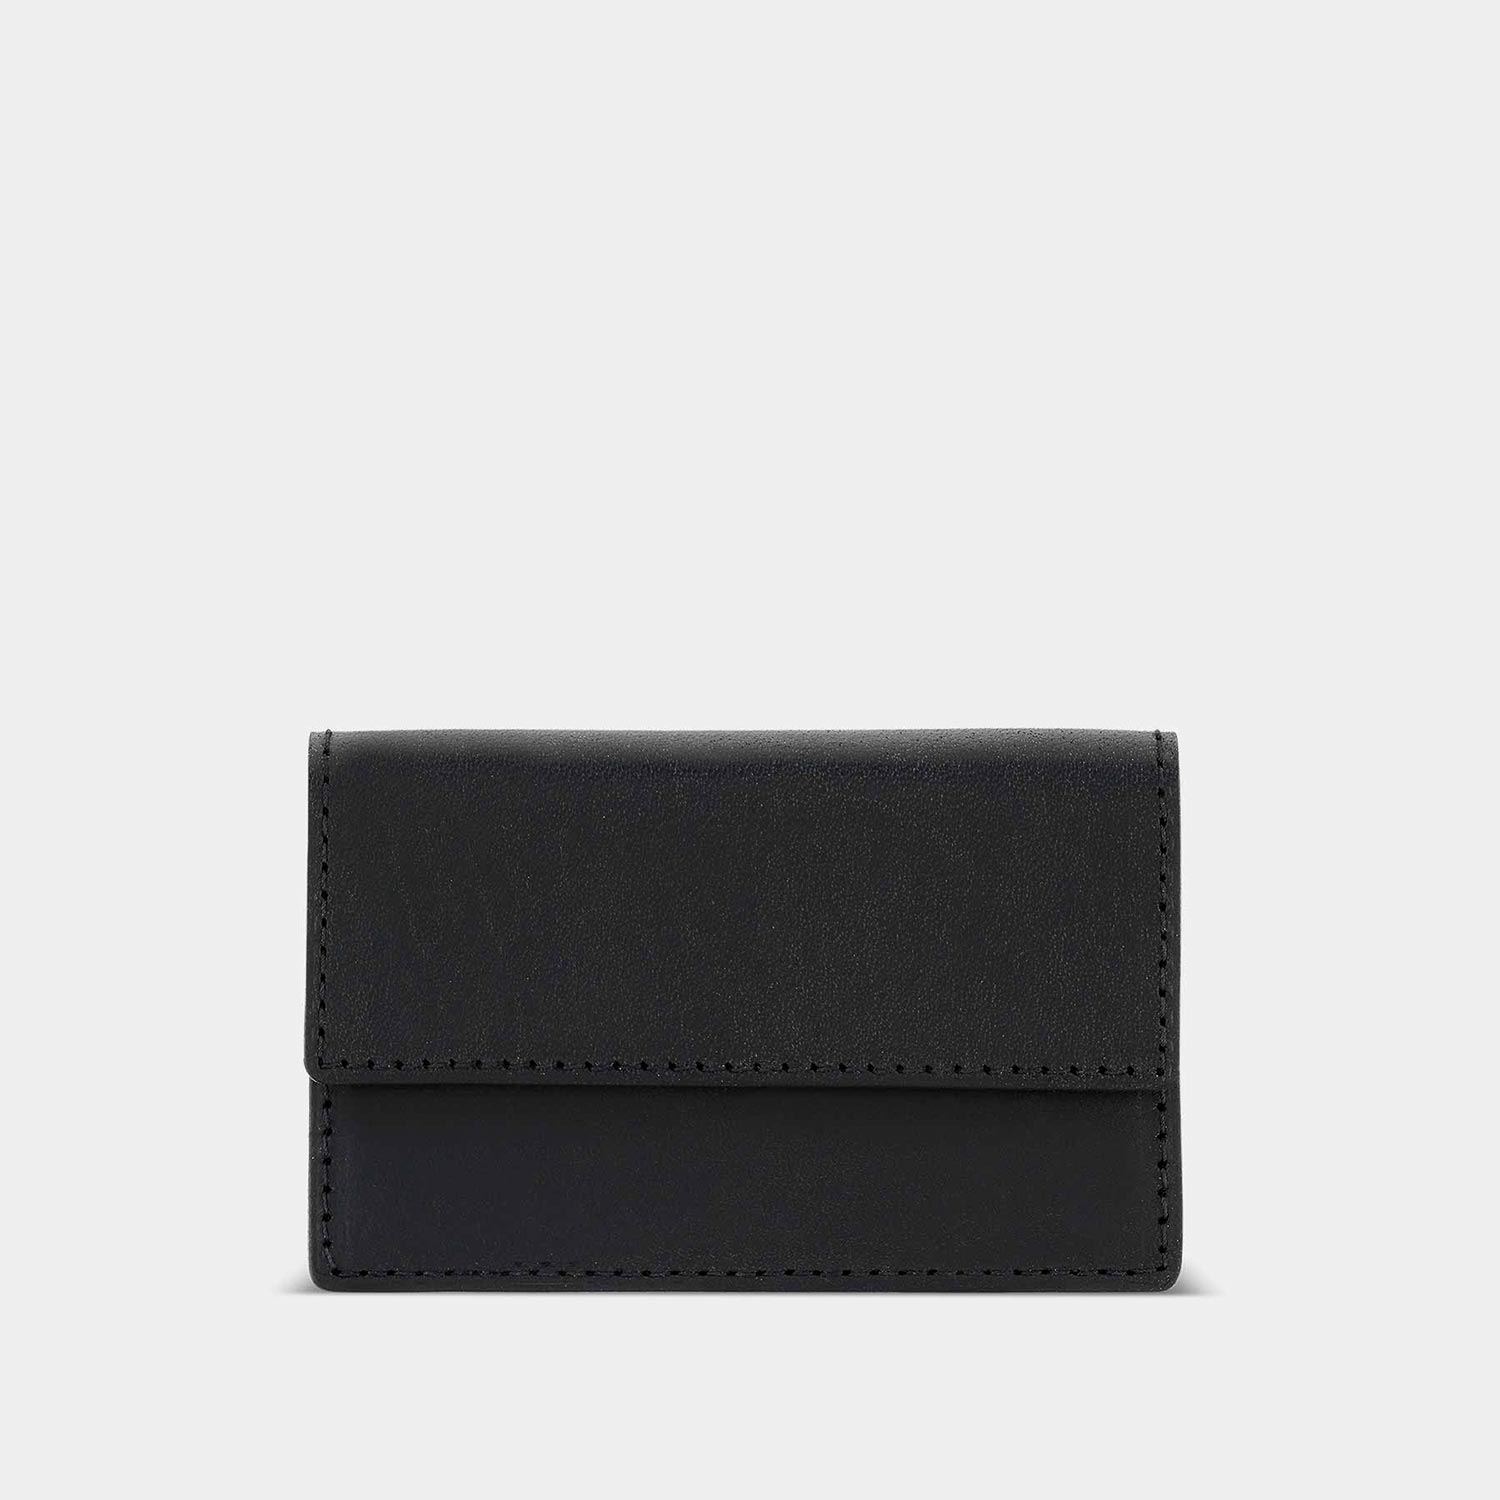 Mini Portemonnaie OTTO von Goodwilhelm in der Farbe black